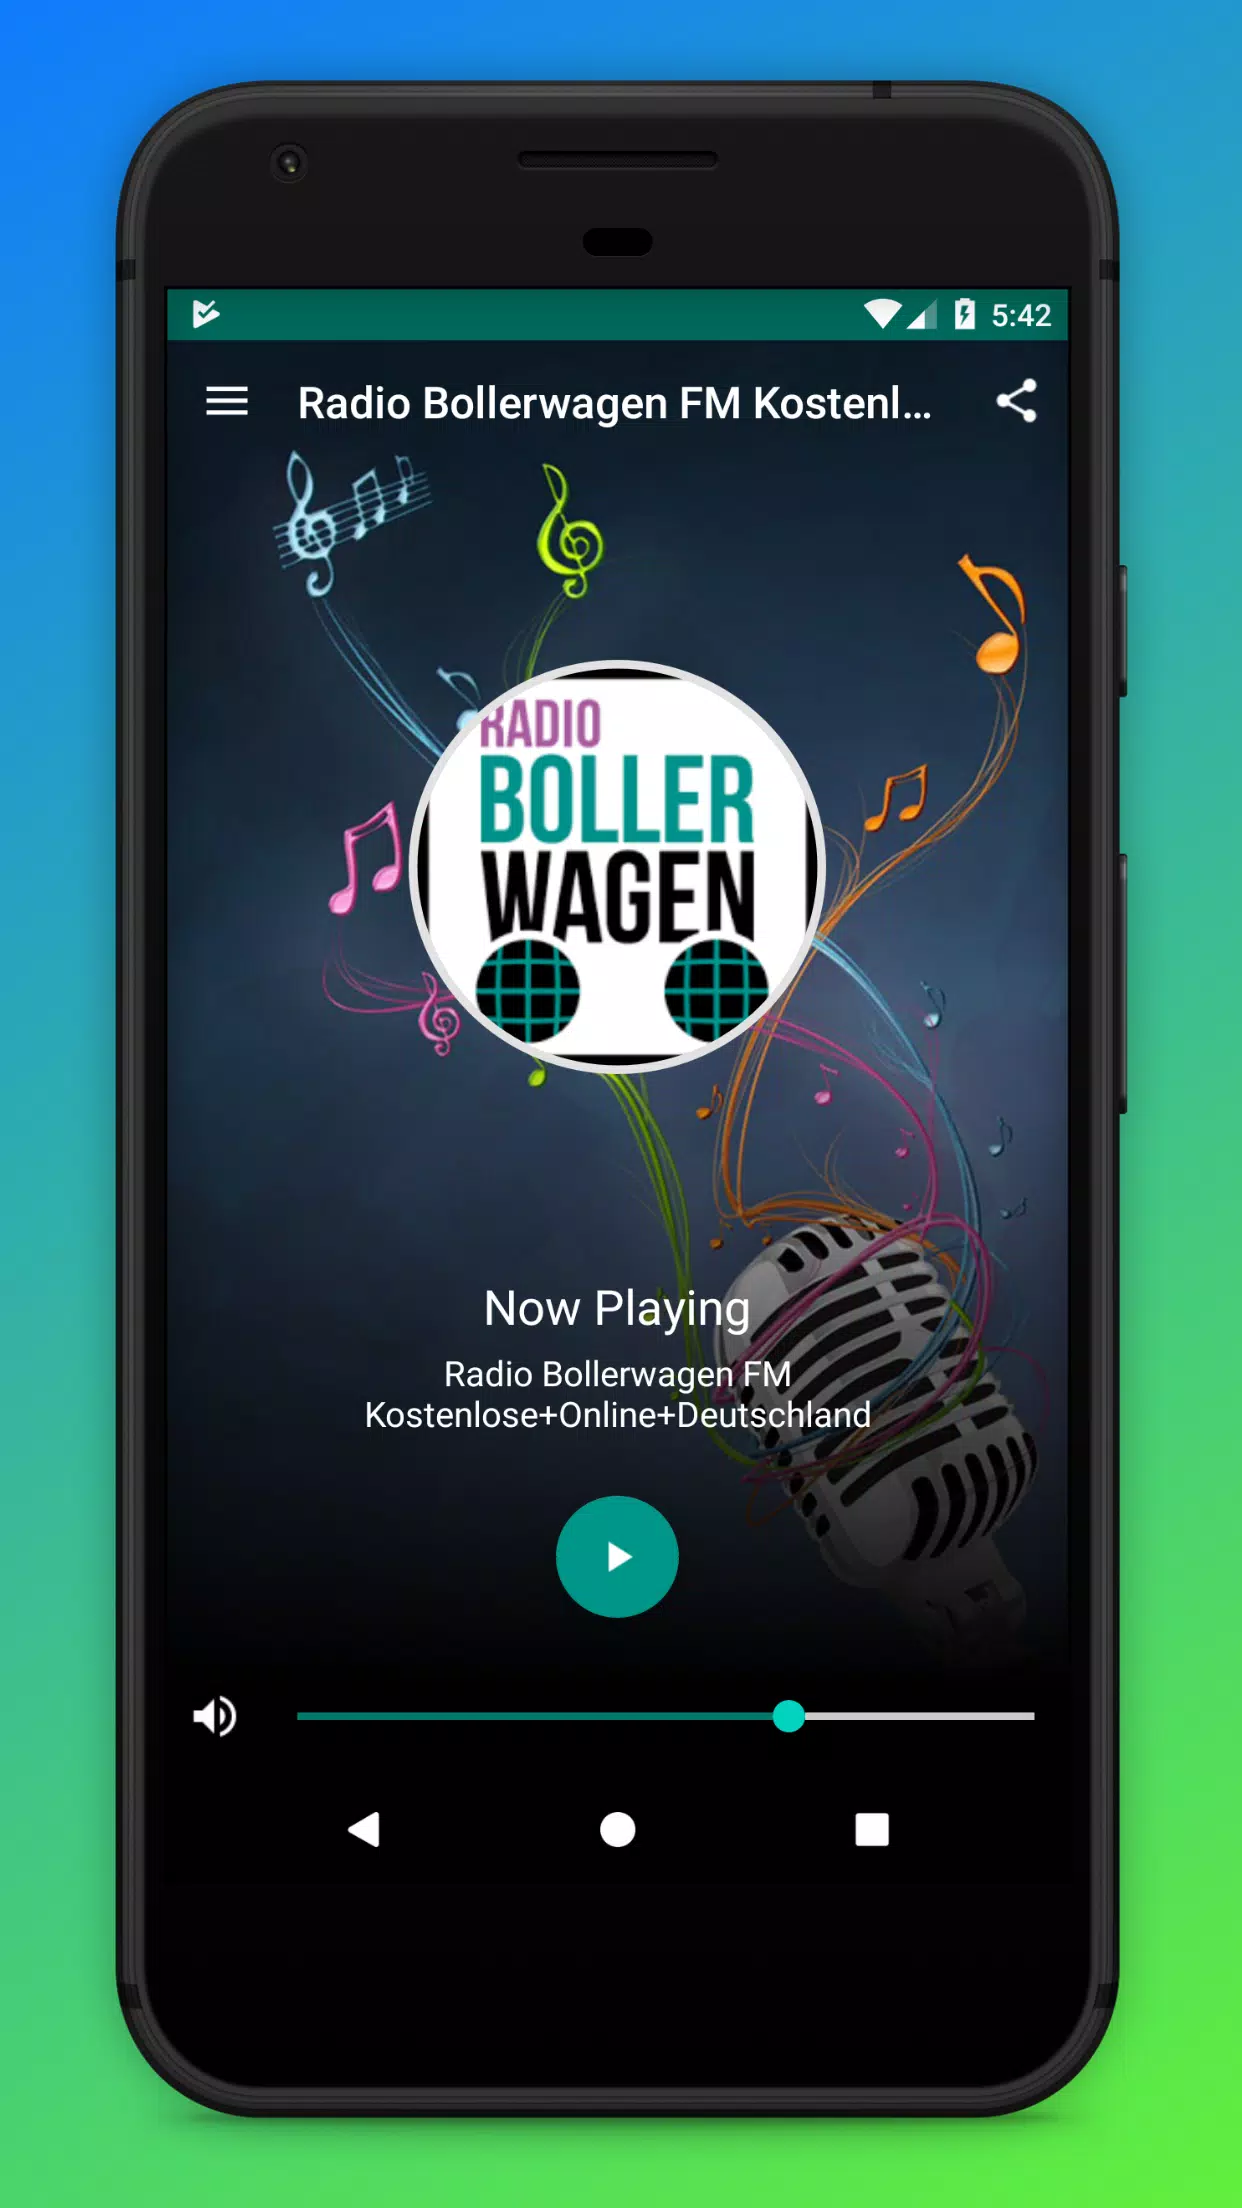 Radio Bollerwagen FM Kostenlose+Online+Deutschland for Android - APK  Download